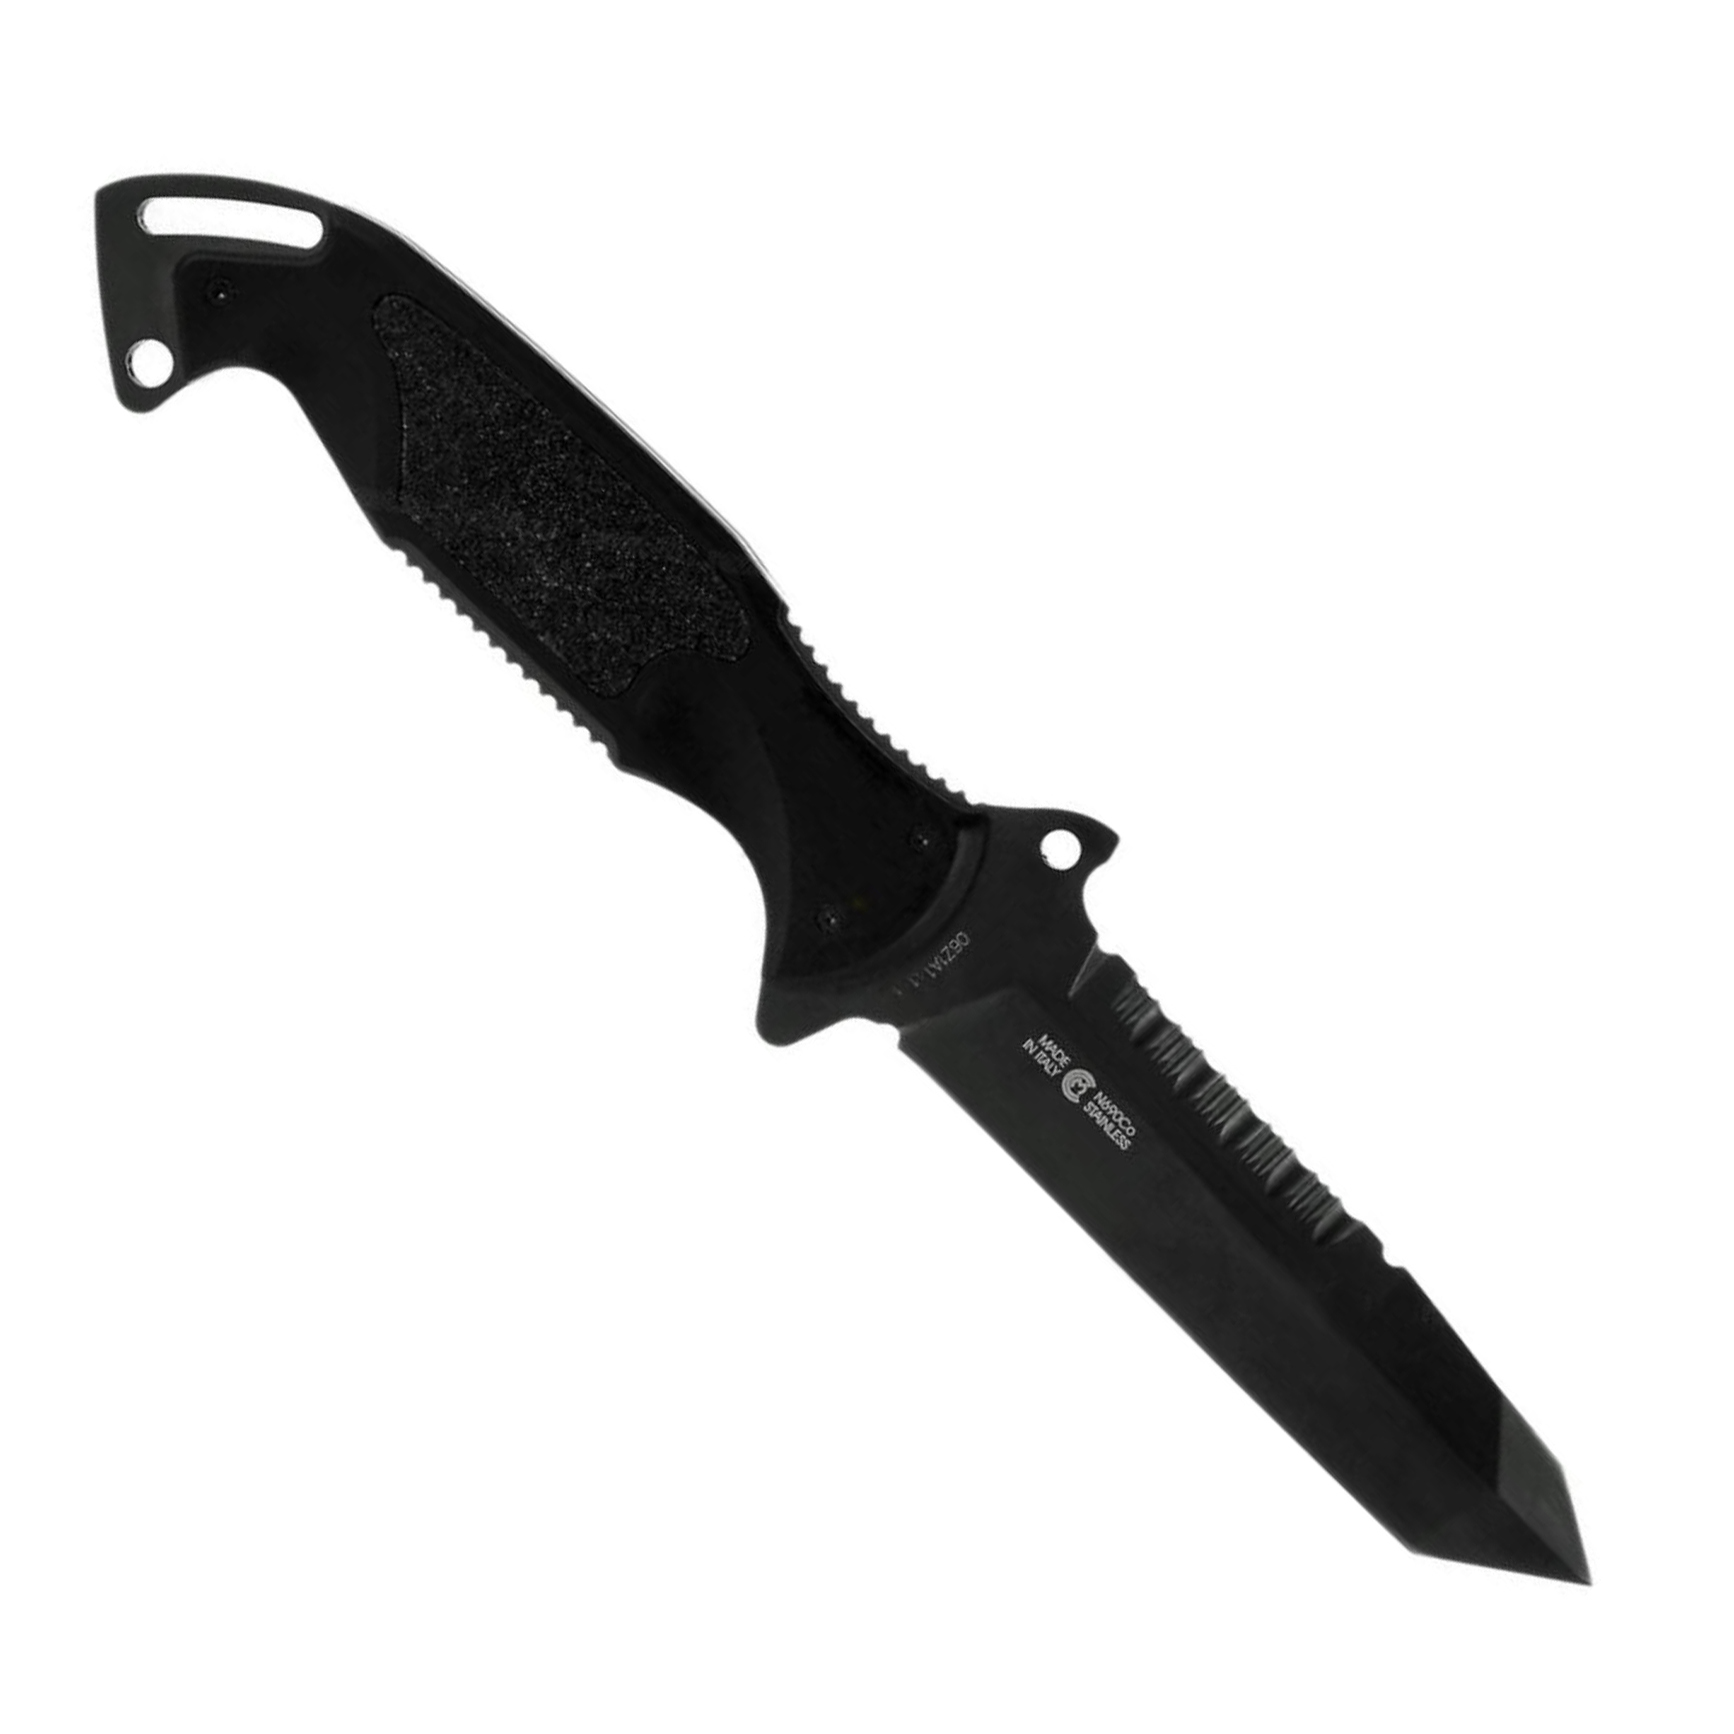 Нож с фиксированным клинком Remington Зулу I (Zulu) RM\895FT Tanto DLC, сталь 440C DLC, алюминий нож с фиксированным клинком ontario rd4 micarta серрейтор